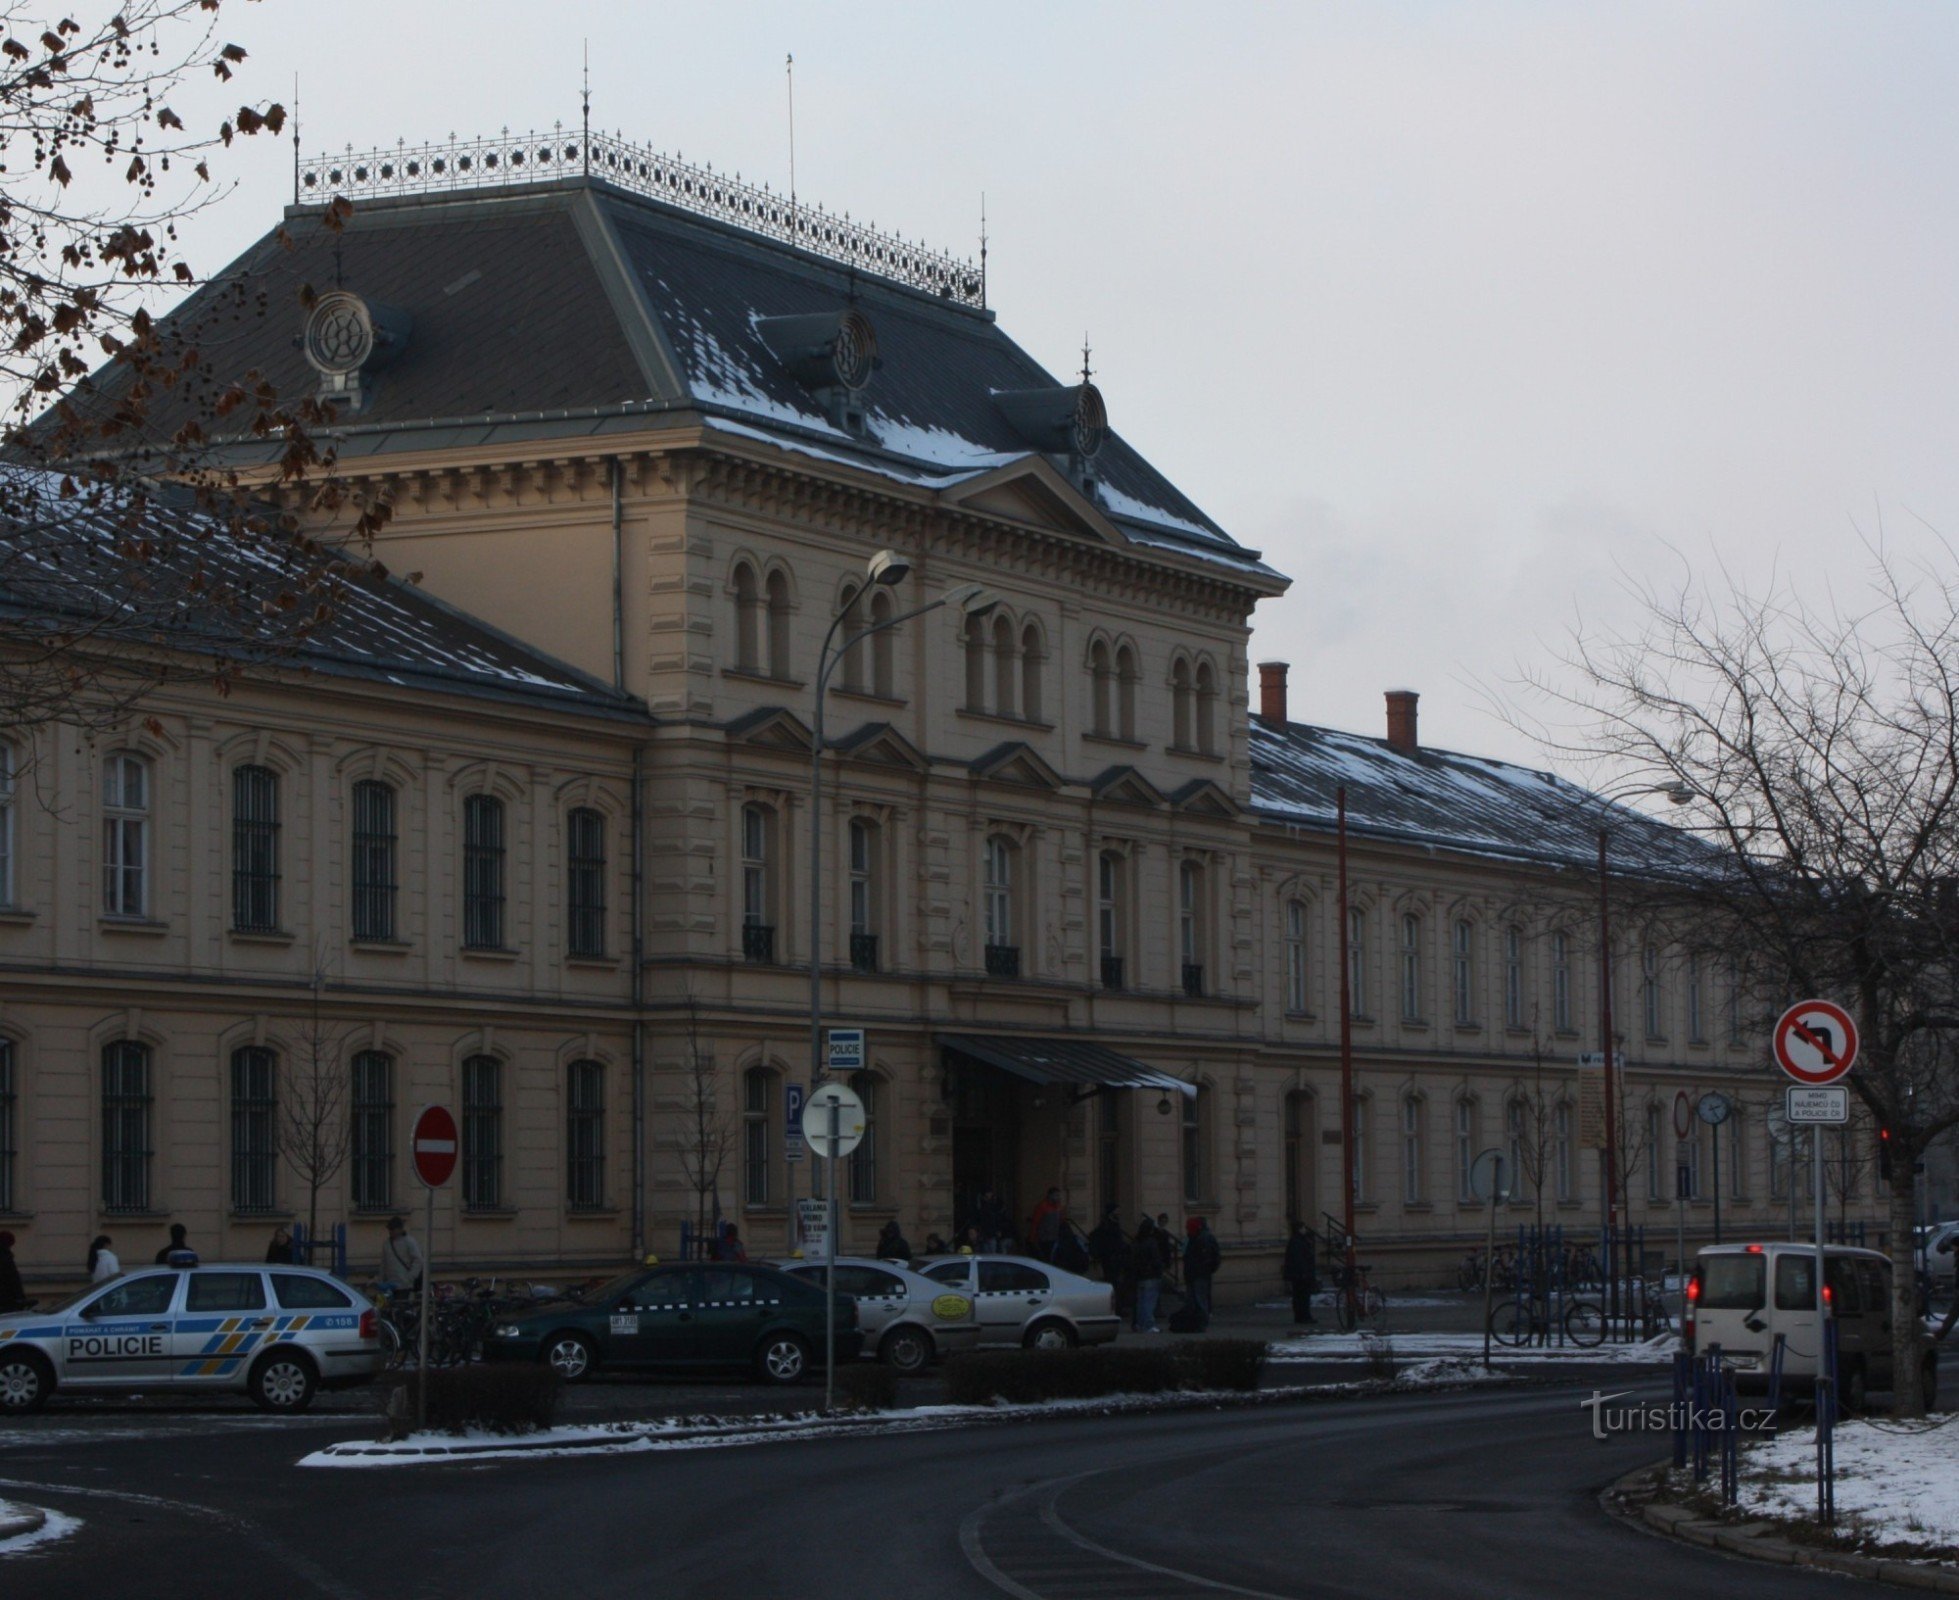 Vista general del edificio de recepción de la estación de tren de Přerov